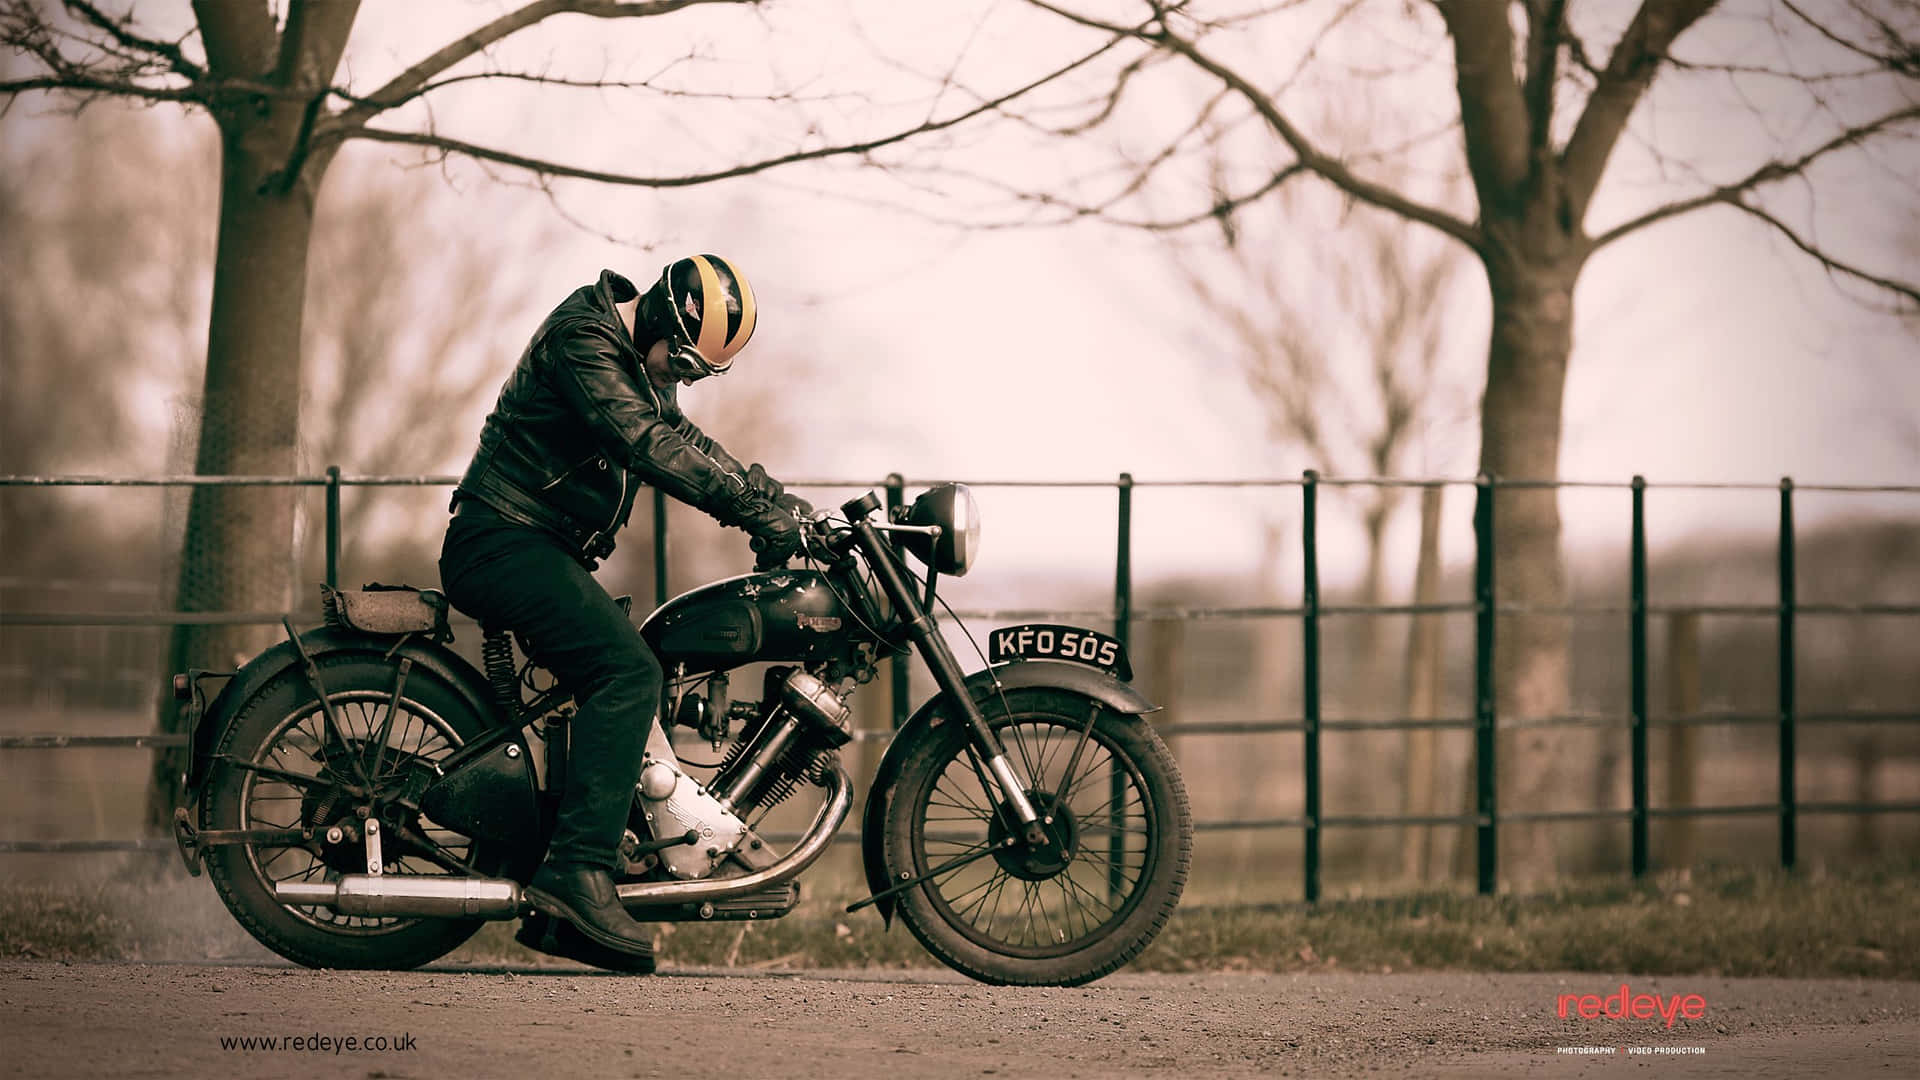 Imagensde Motociclistas Britânicos Vintage